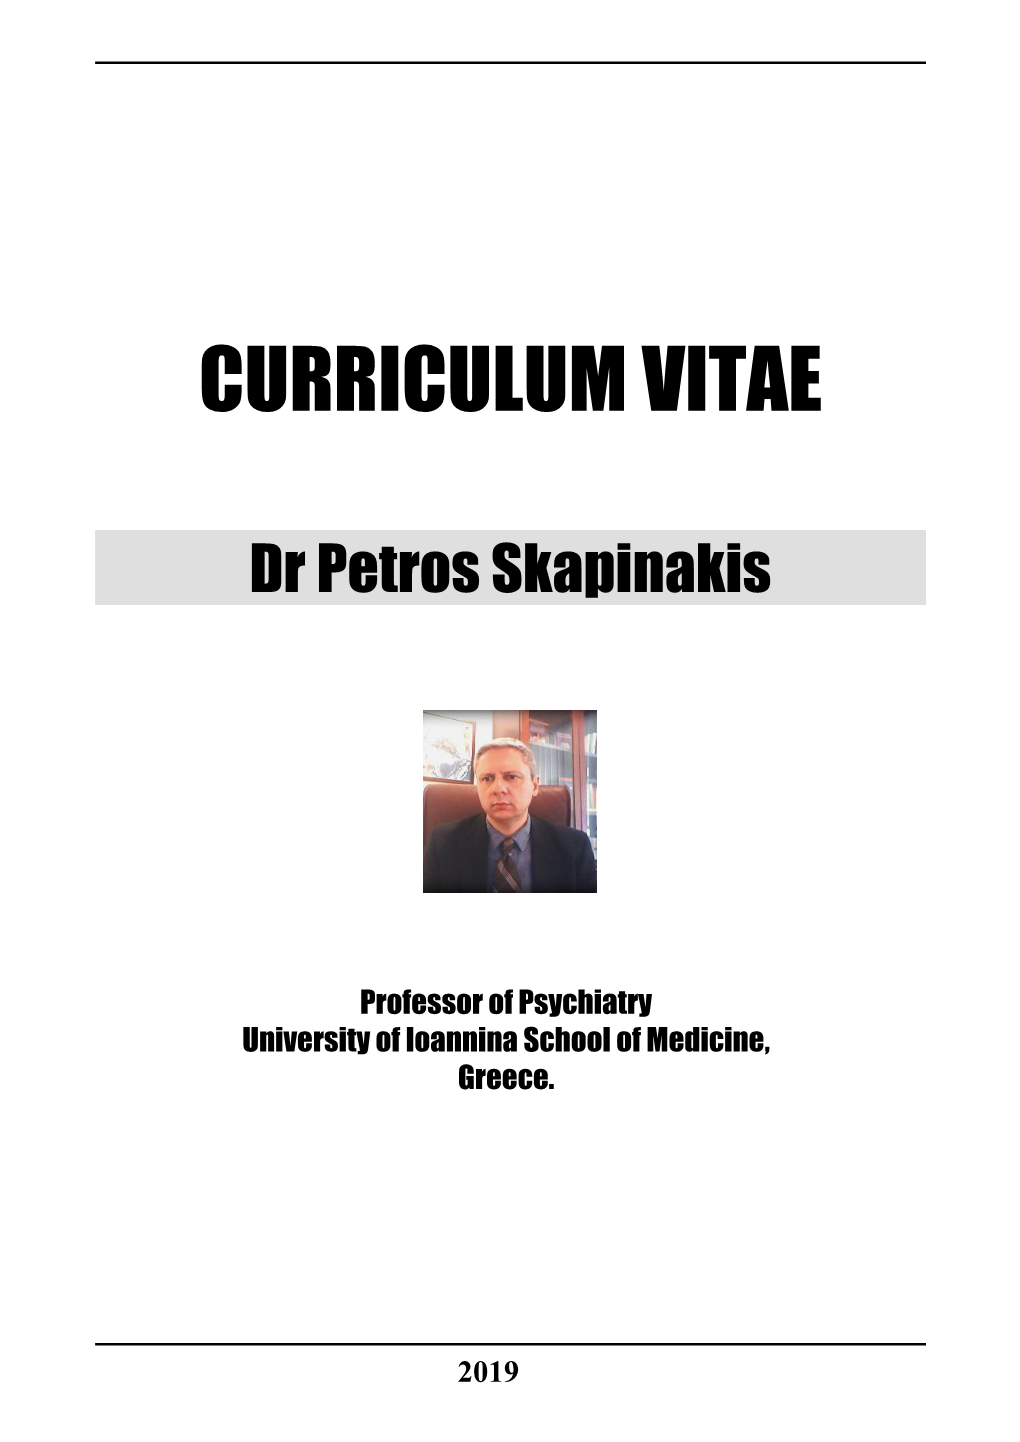 Dr Petros Skapinakis